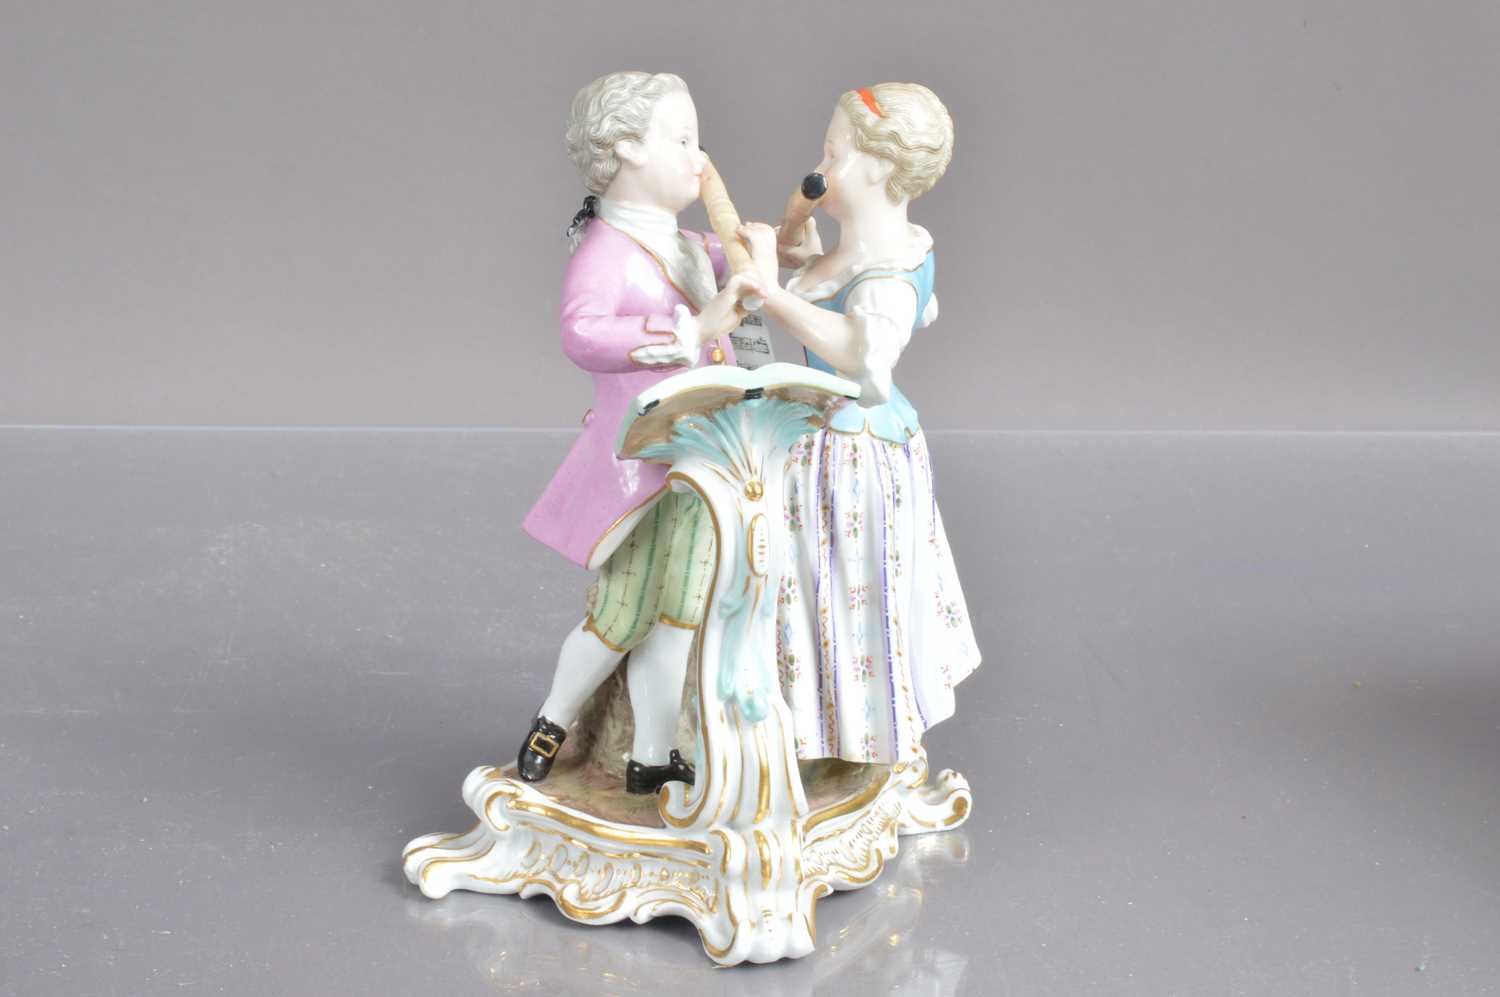 A Meissen porcelain flute duet figure group, - Image 6 of 6